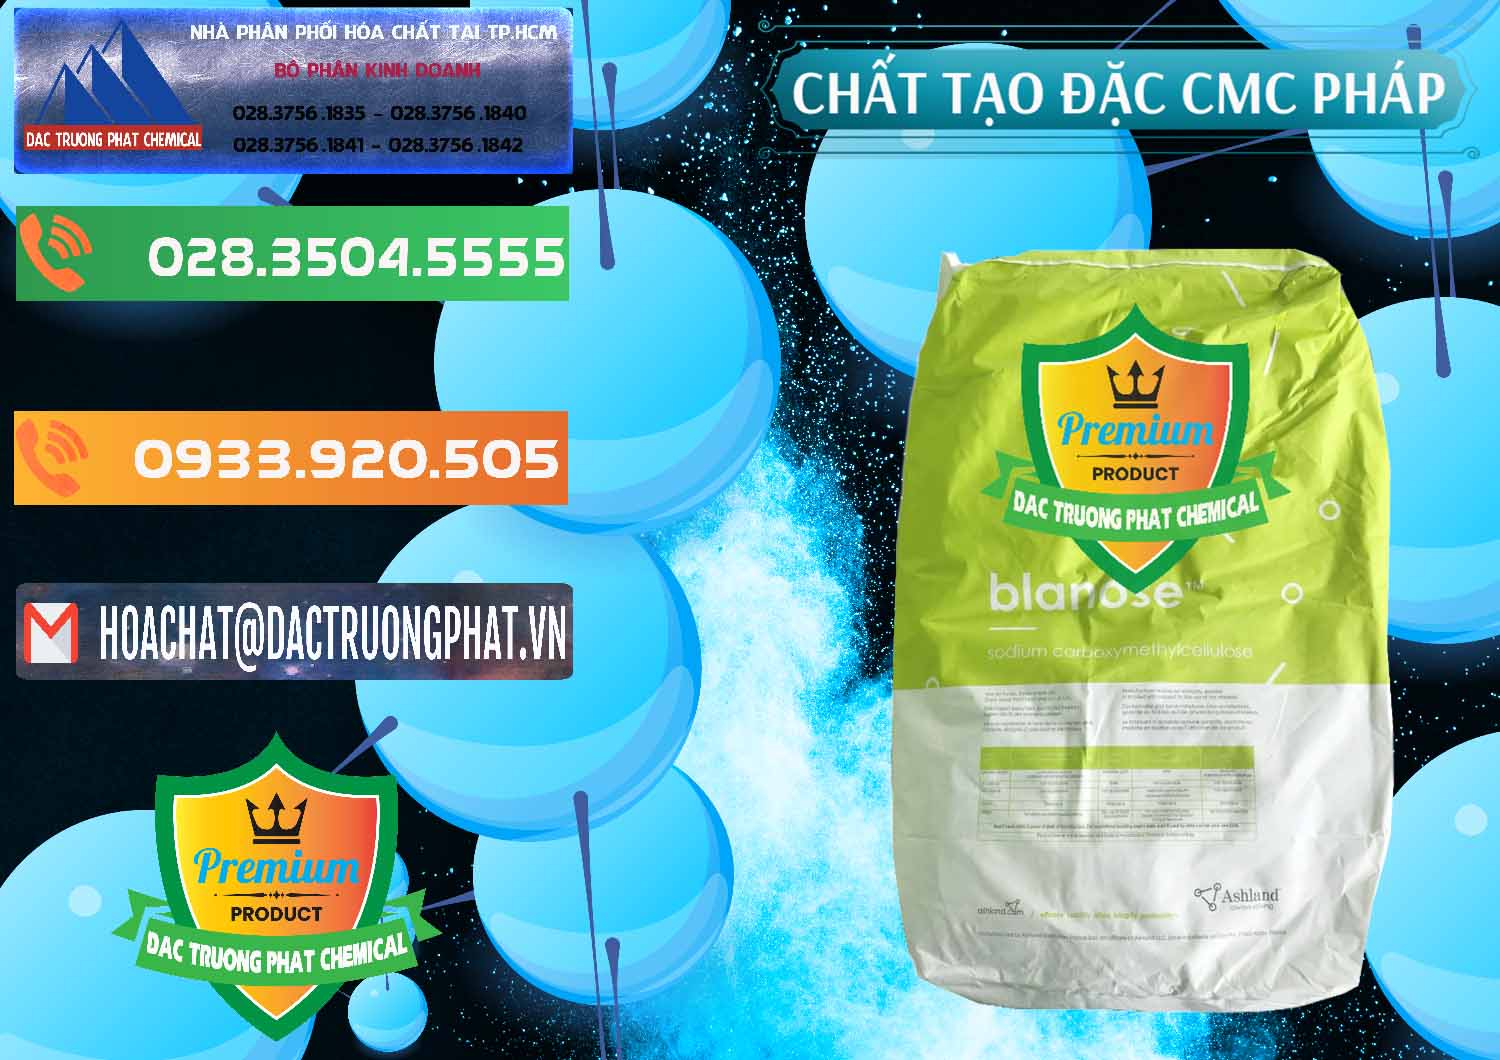 Nhà cung cấp & bán Chất Tạo Đặc CMC - Carboxyl Methyl Cellulose Pháp France - 0394 - Nhà cung ứng và phân phối hóa chất tại TP.HCM - hoachatxulynuoc.com.vn